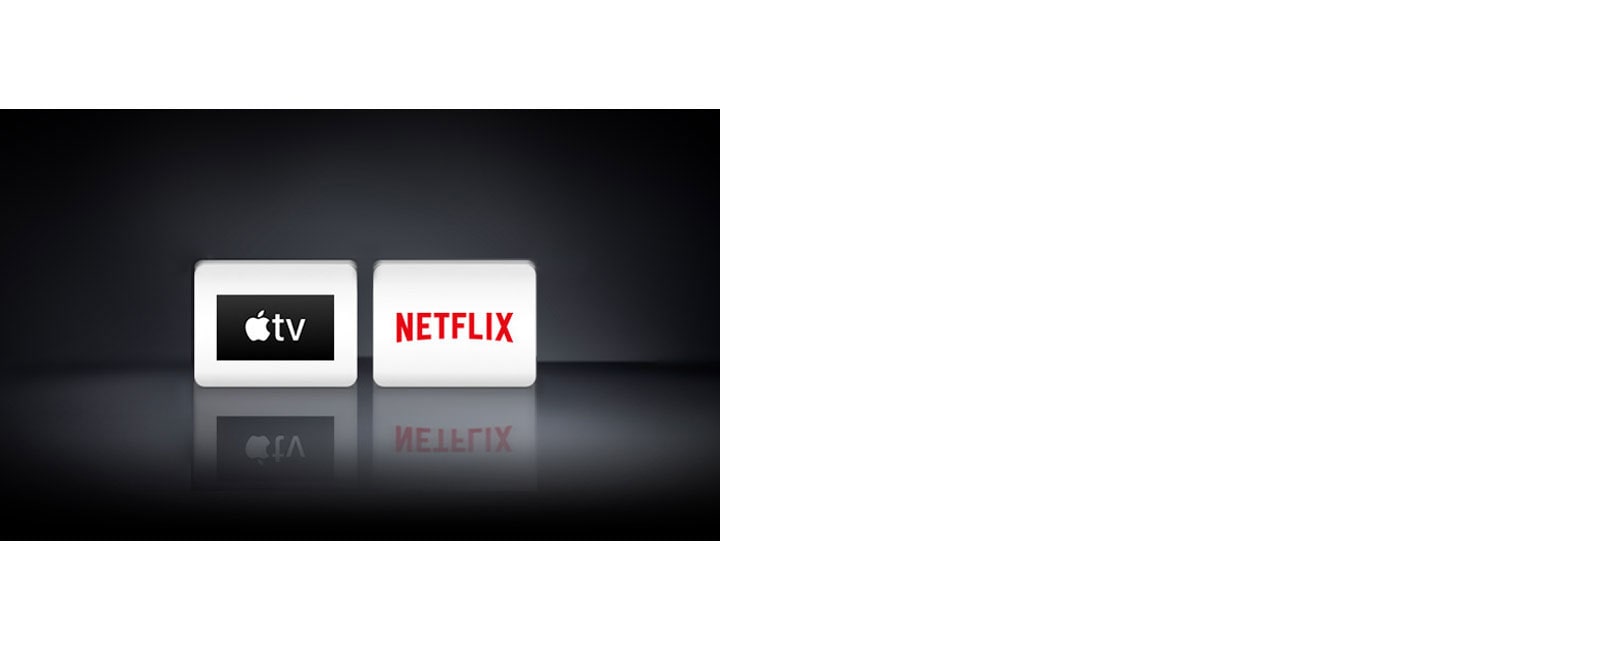 dos logotipos: Apple TV y Netflix